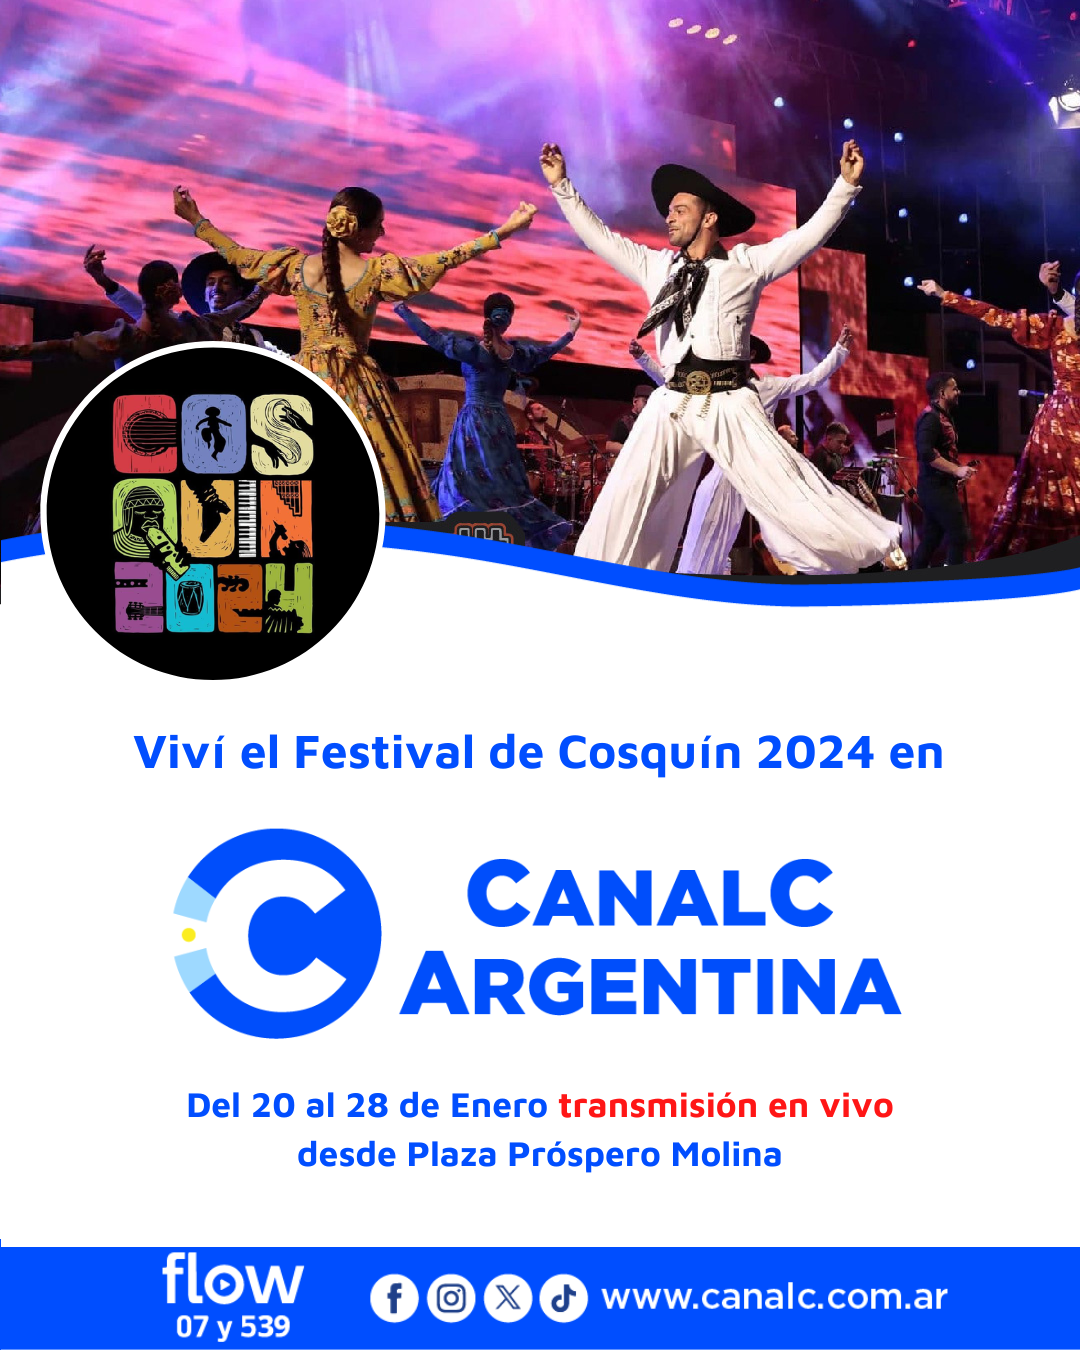 ¡Viví el Festival de Cosquín en Canal C Argentina! • Canal C